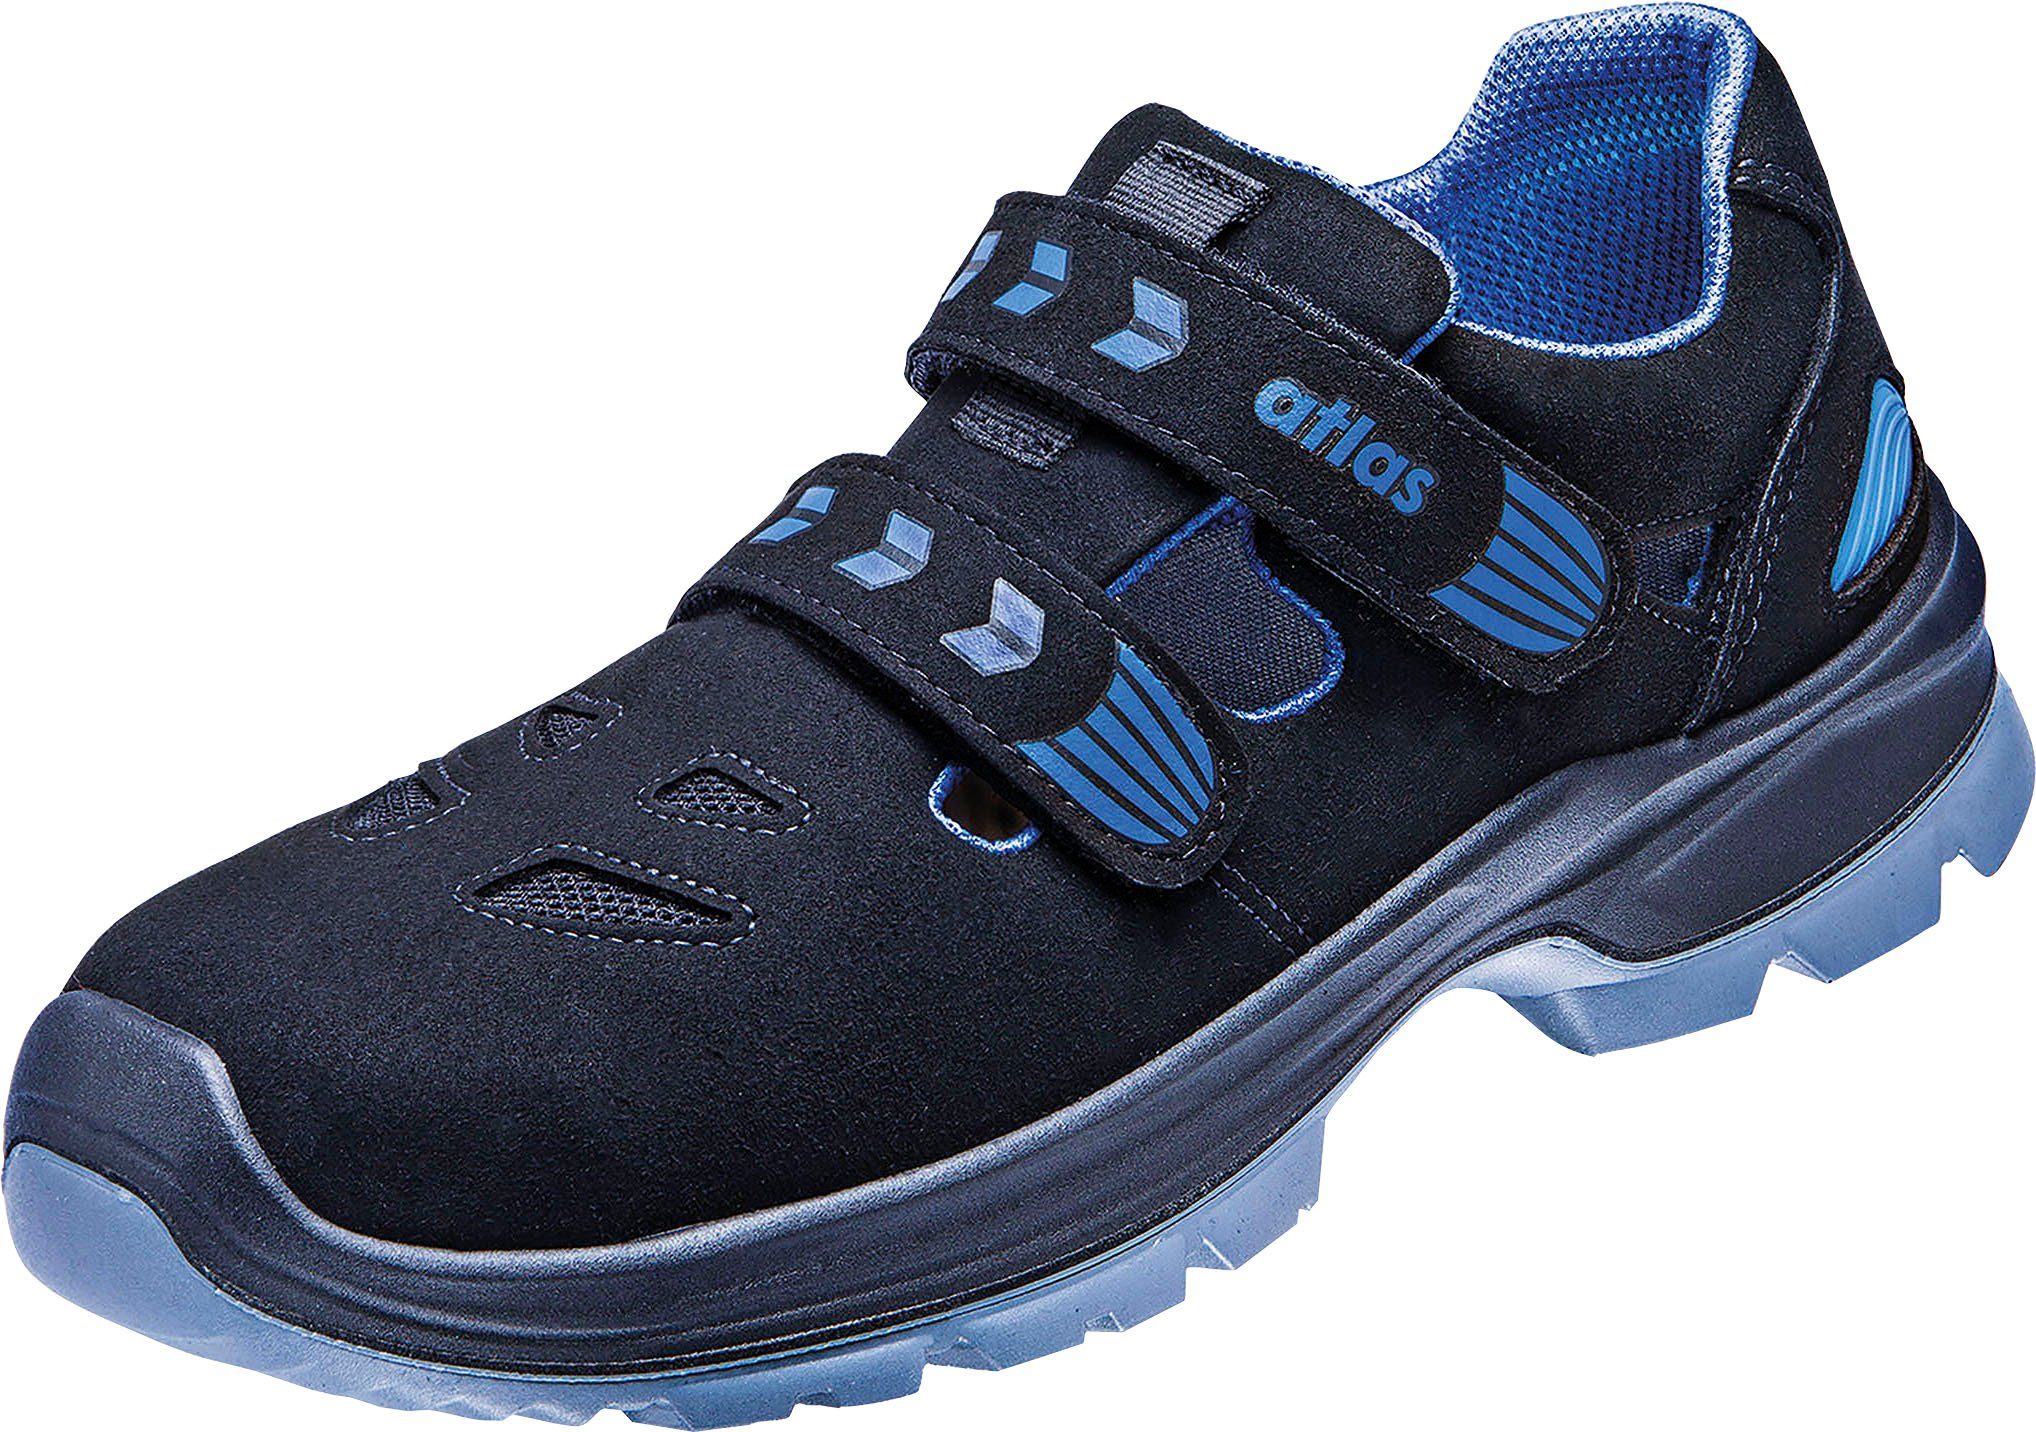 S1 12, Ergo-Med 360 Schuhe Sicherheitsklasse Atlas Sandale, Sicherheitsschuh Schuhweite